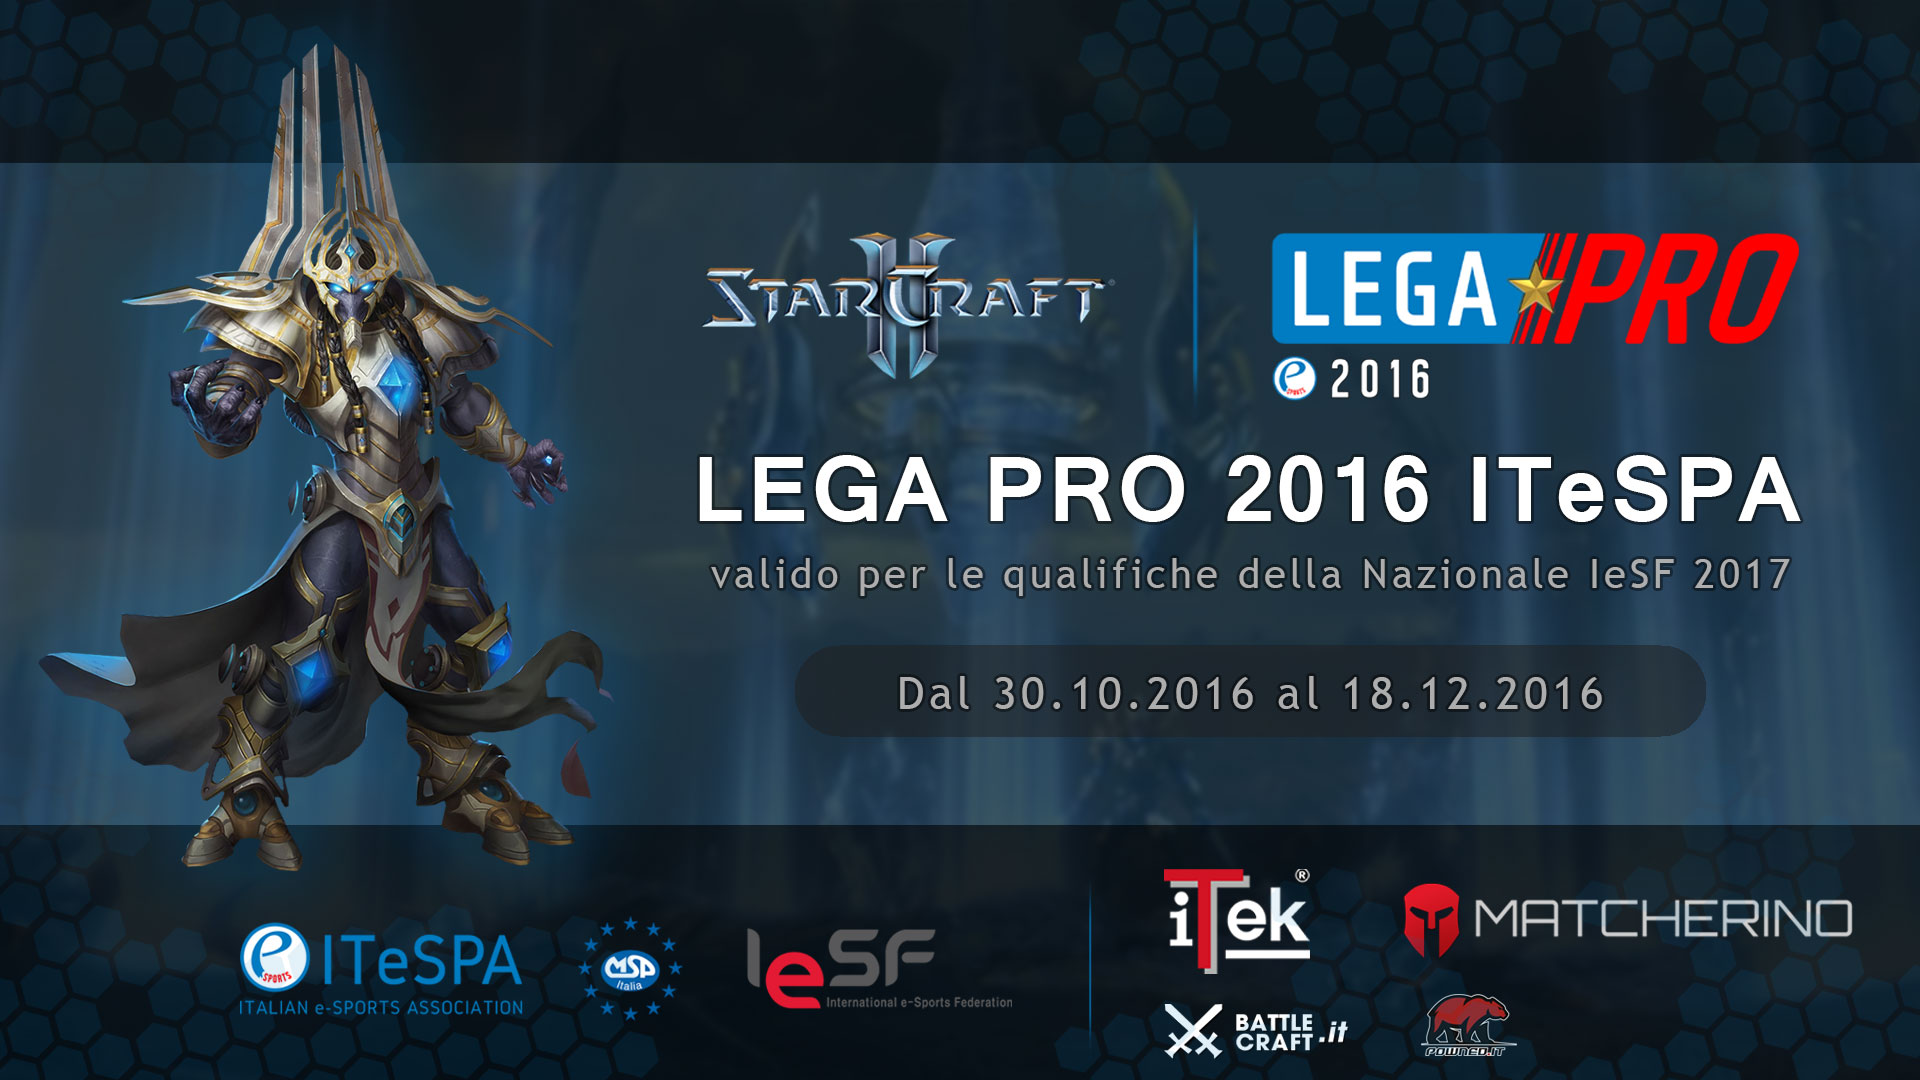 Lega Pro 2016: al via la nuova competizione di Starcraft 2